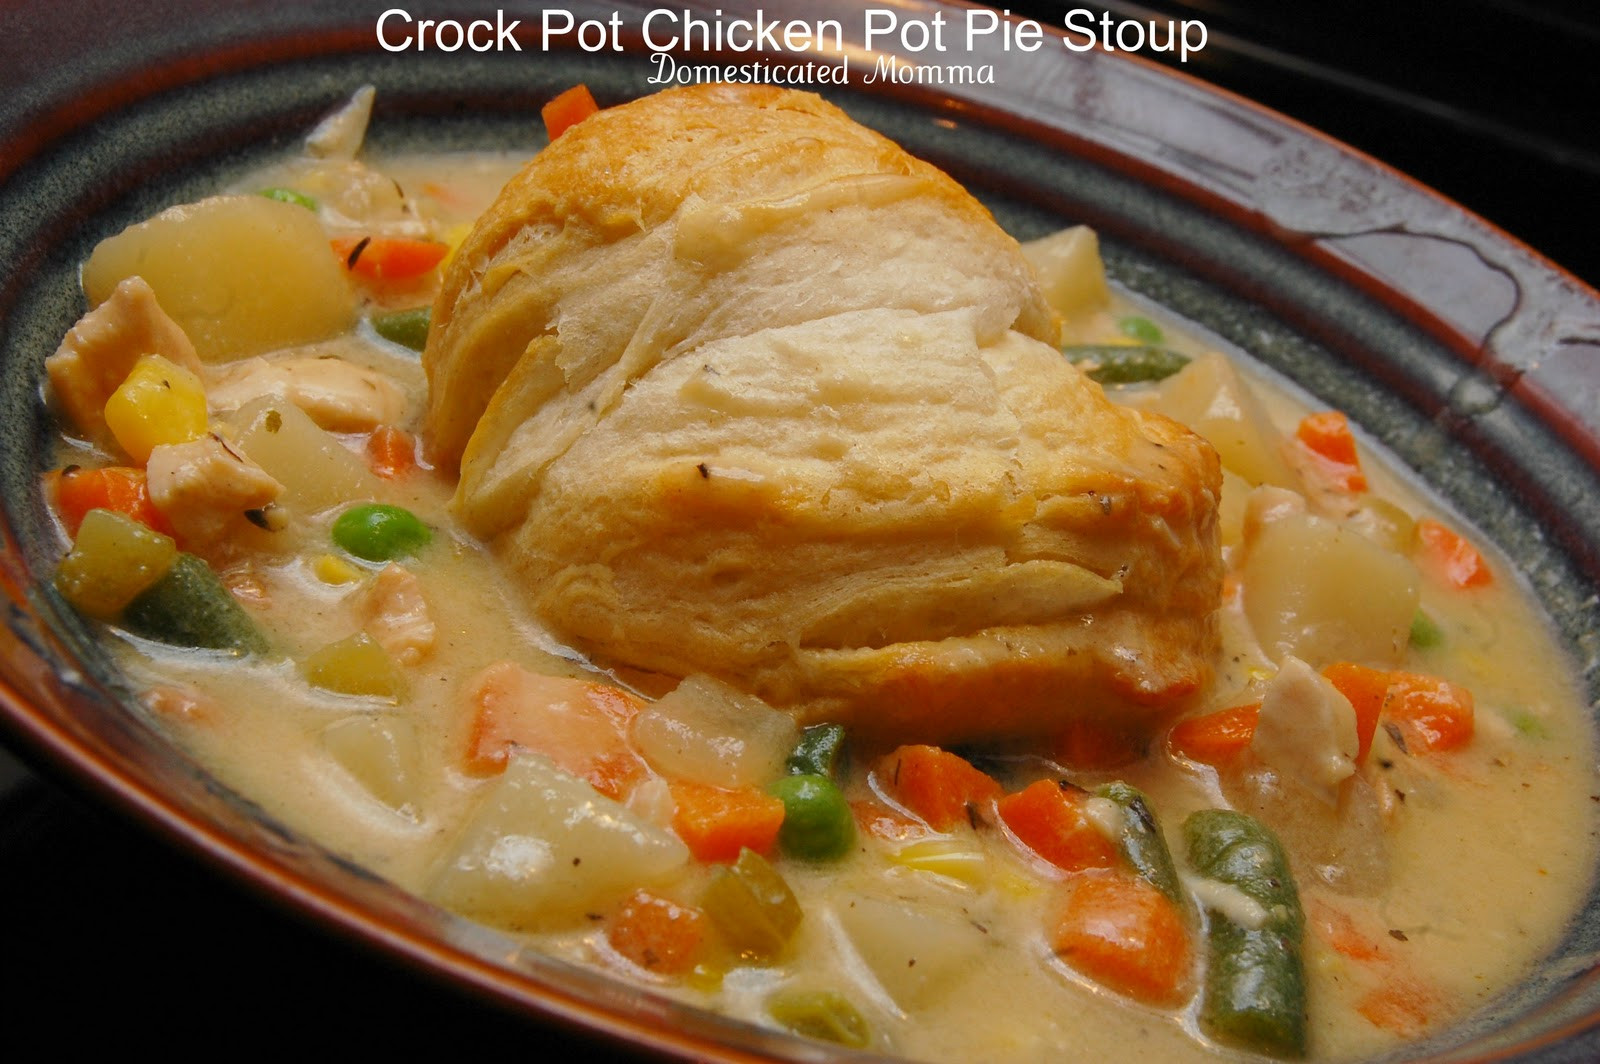 Chicken Pot Pie Crock Pot
 Foo Friday Crock Pot Chicken Pot Pie Stoup